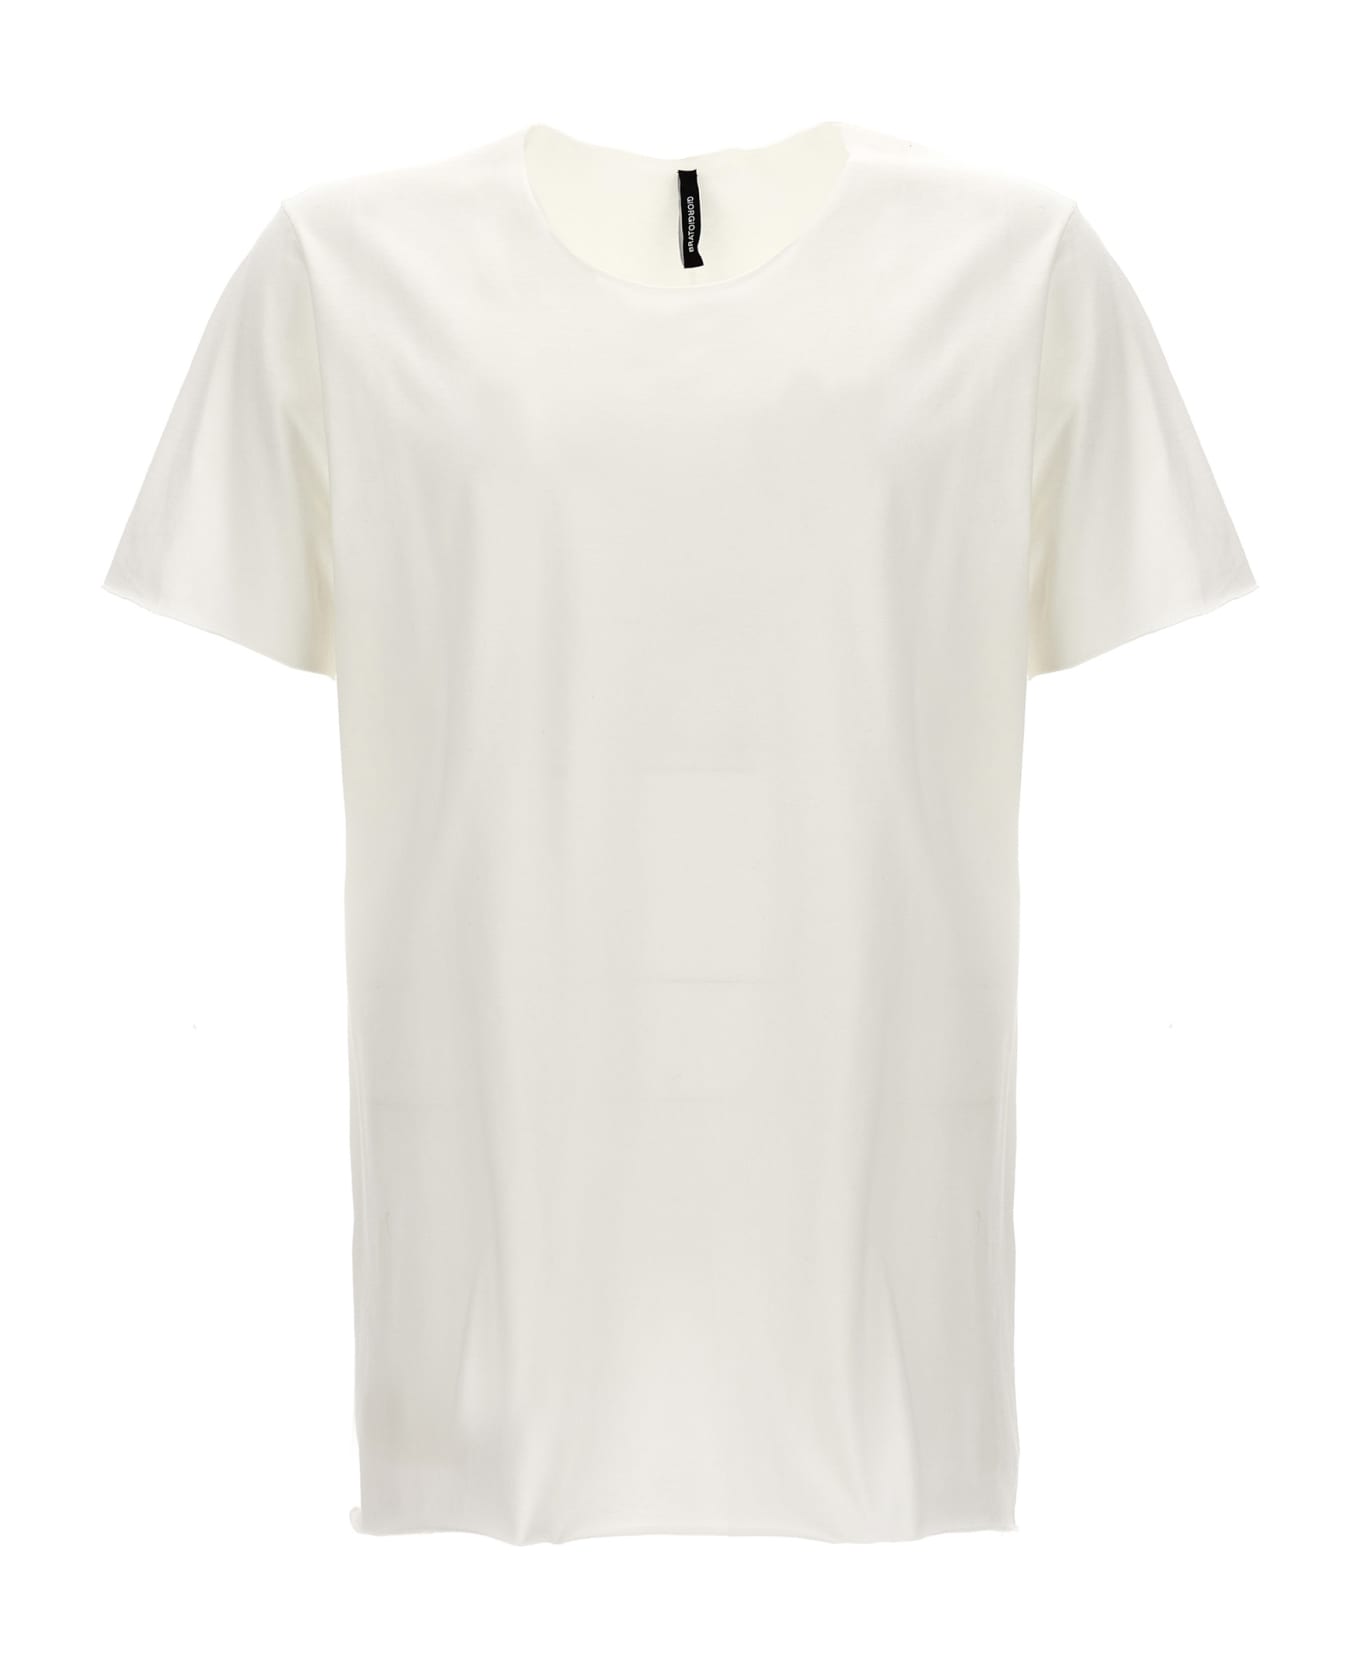 Giorgio Brato Raw Cut T-shirt - White シャツ